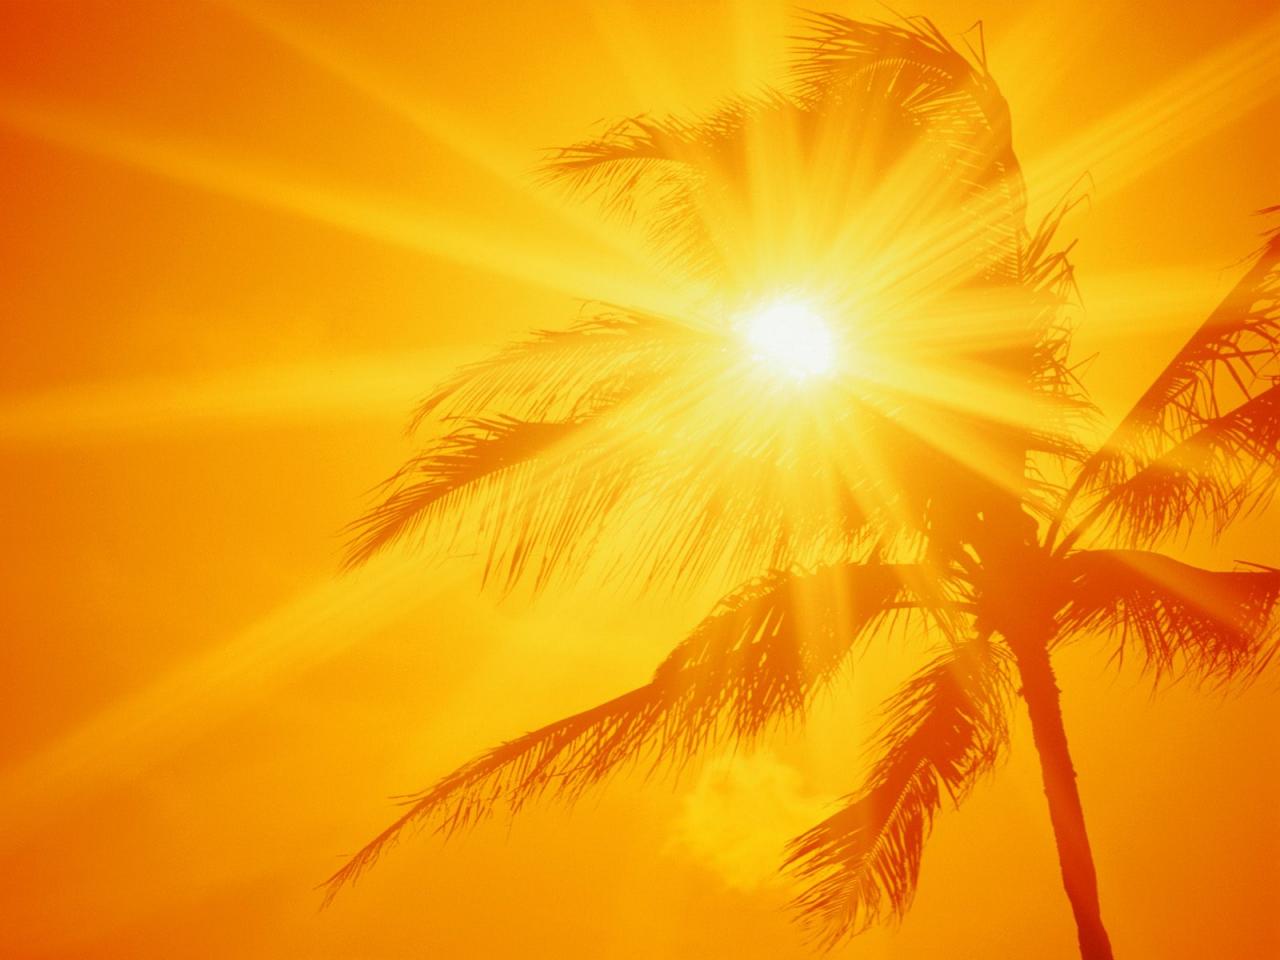 обои Пальма на фоне солнца фото